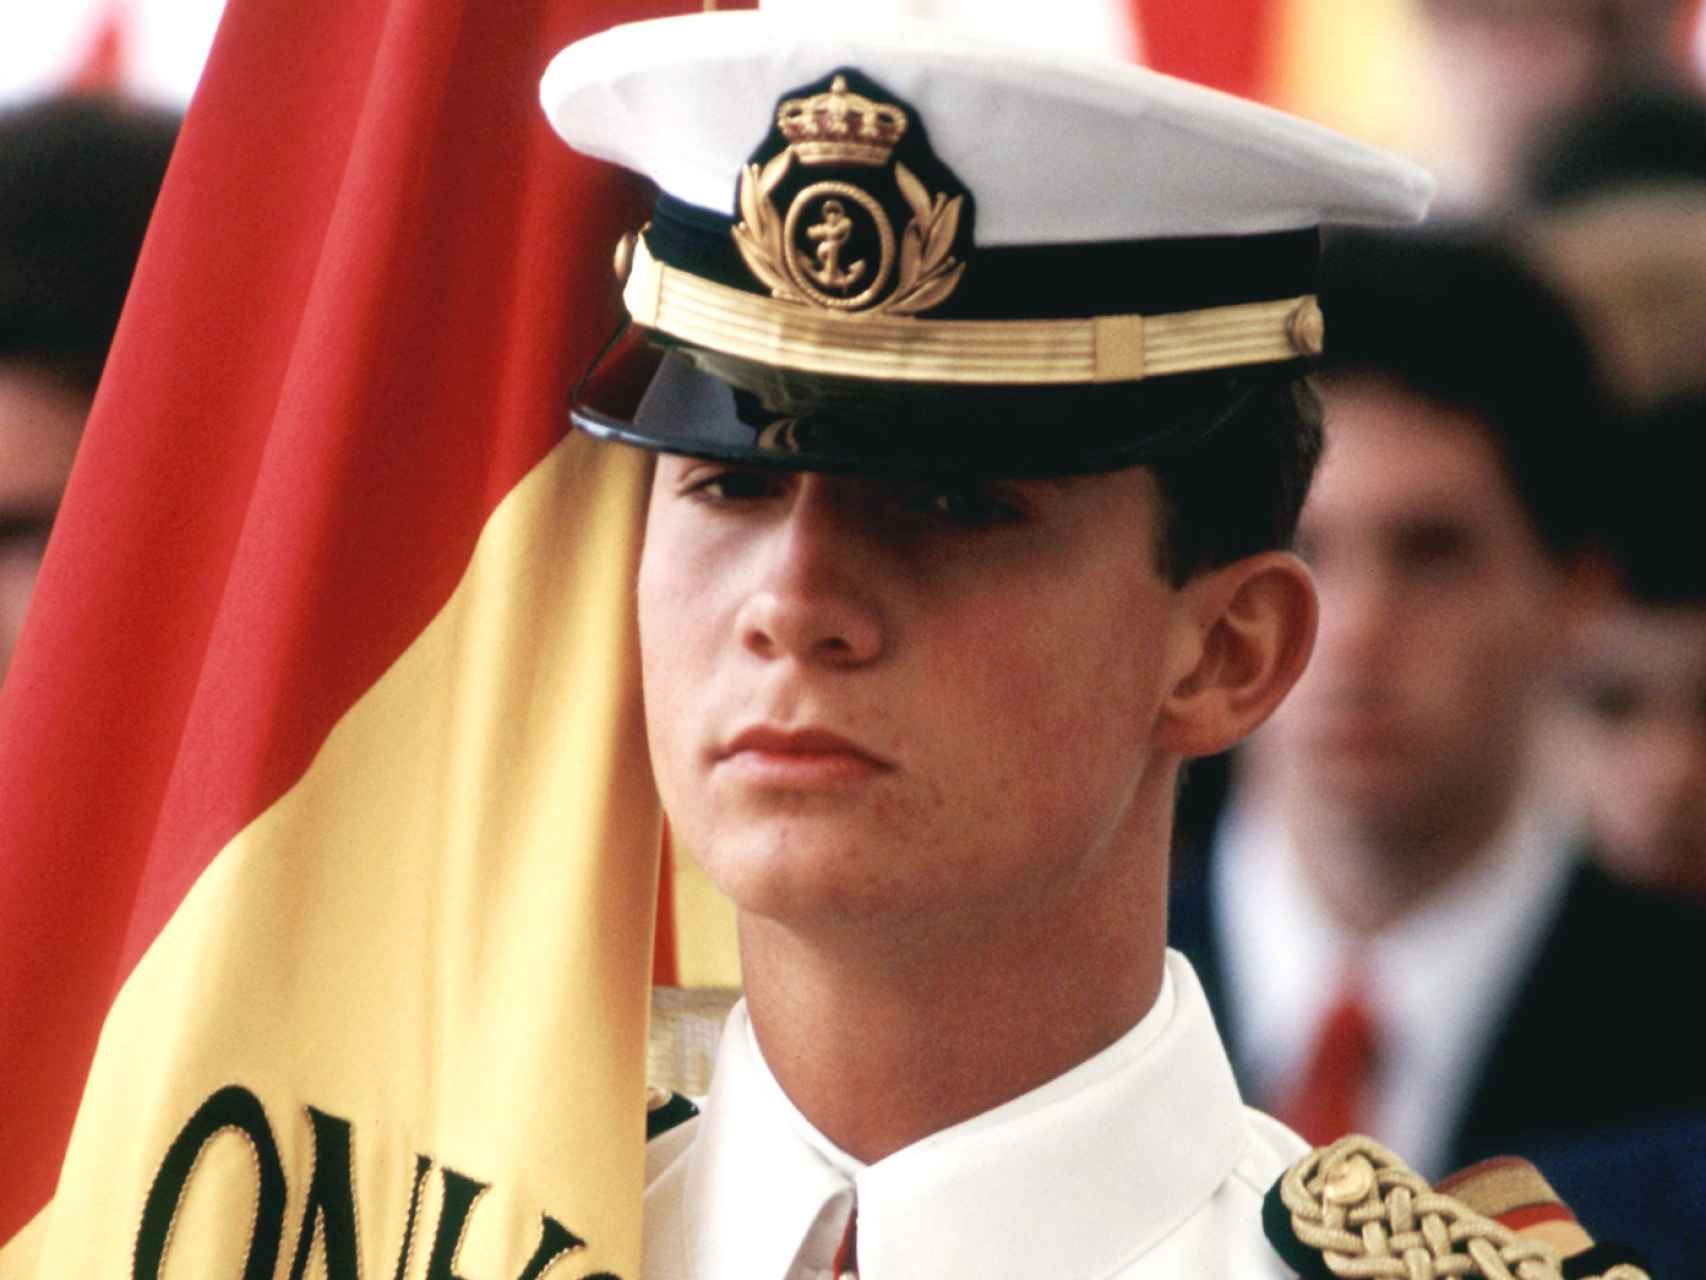 El entonces príncipe con uniforme de cadete y la bandera del buque Juan Sebastián Elcano durante un acto oficial.